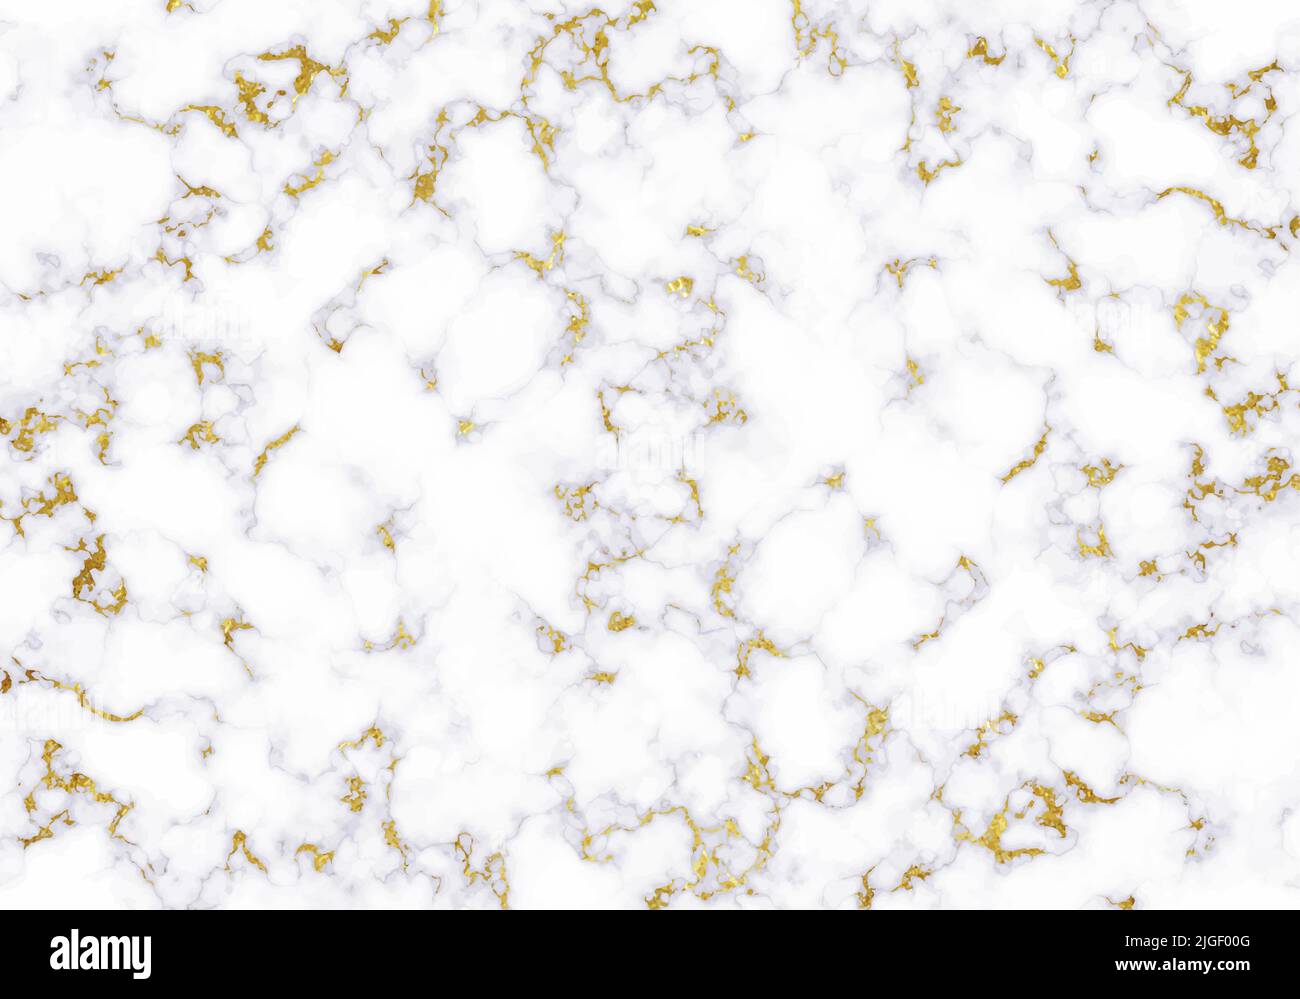 Weiße Marmorstruktur mit goldenen Folienelementen. Abstrakter Vektorhintergrund. Stock Vektor